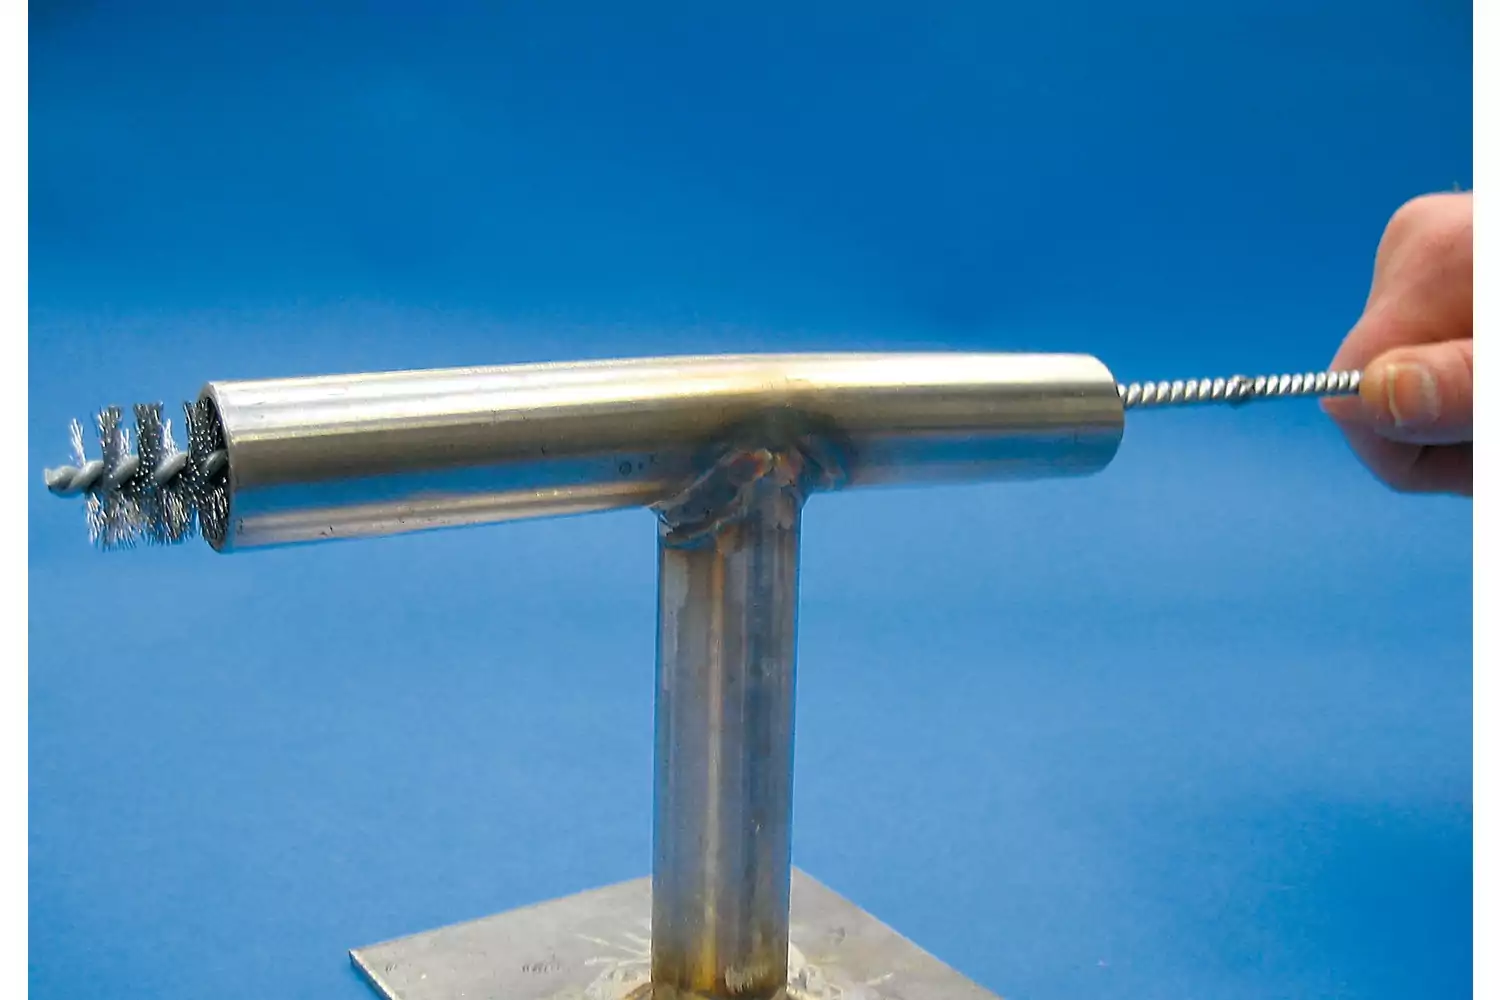 Accesorios de prolongador IBUV para cepillos limpiatubos con rosca 3/8", 1000 mm de longitud 2